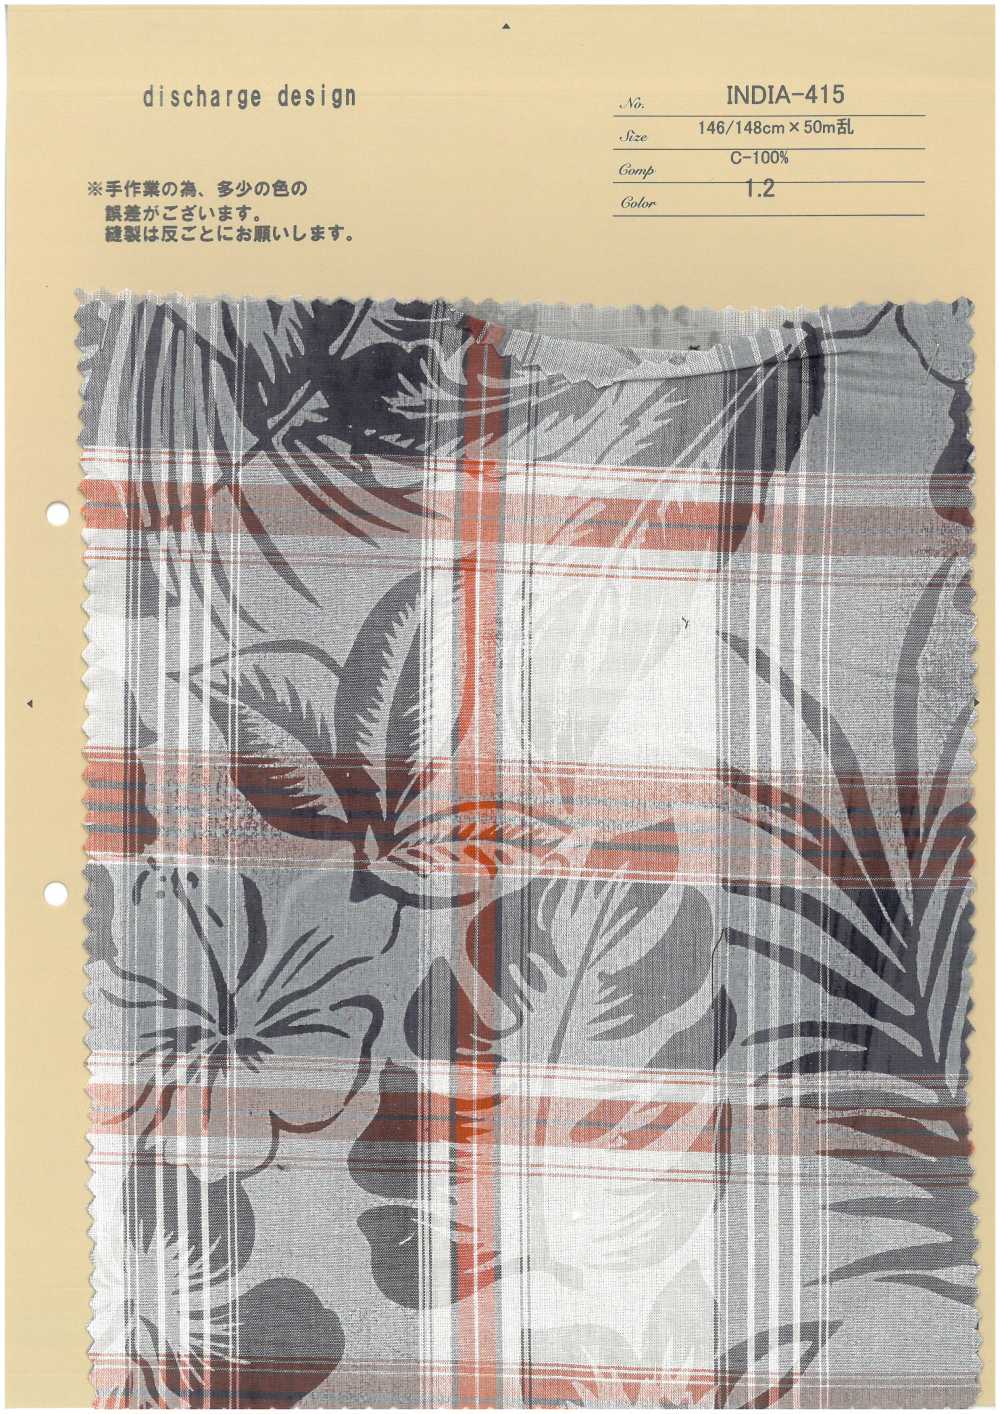 INDIA-415 Discharge Design[Textile / Fabric] ARINOBE CO., LTD.